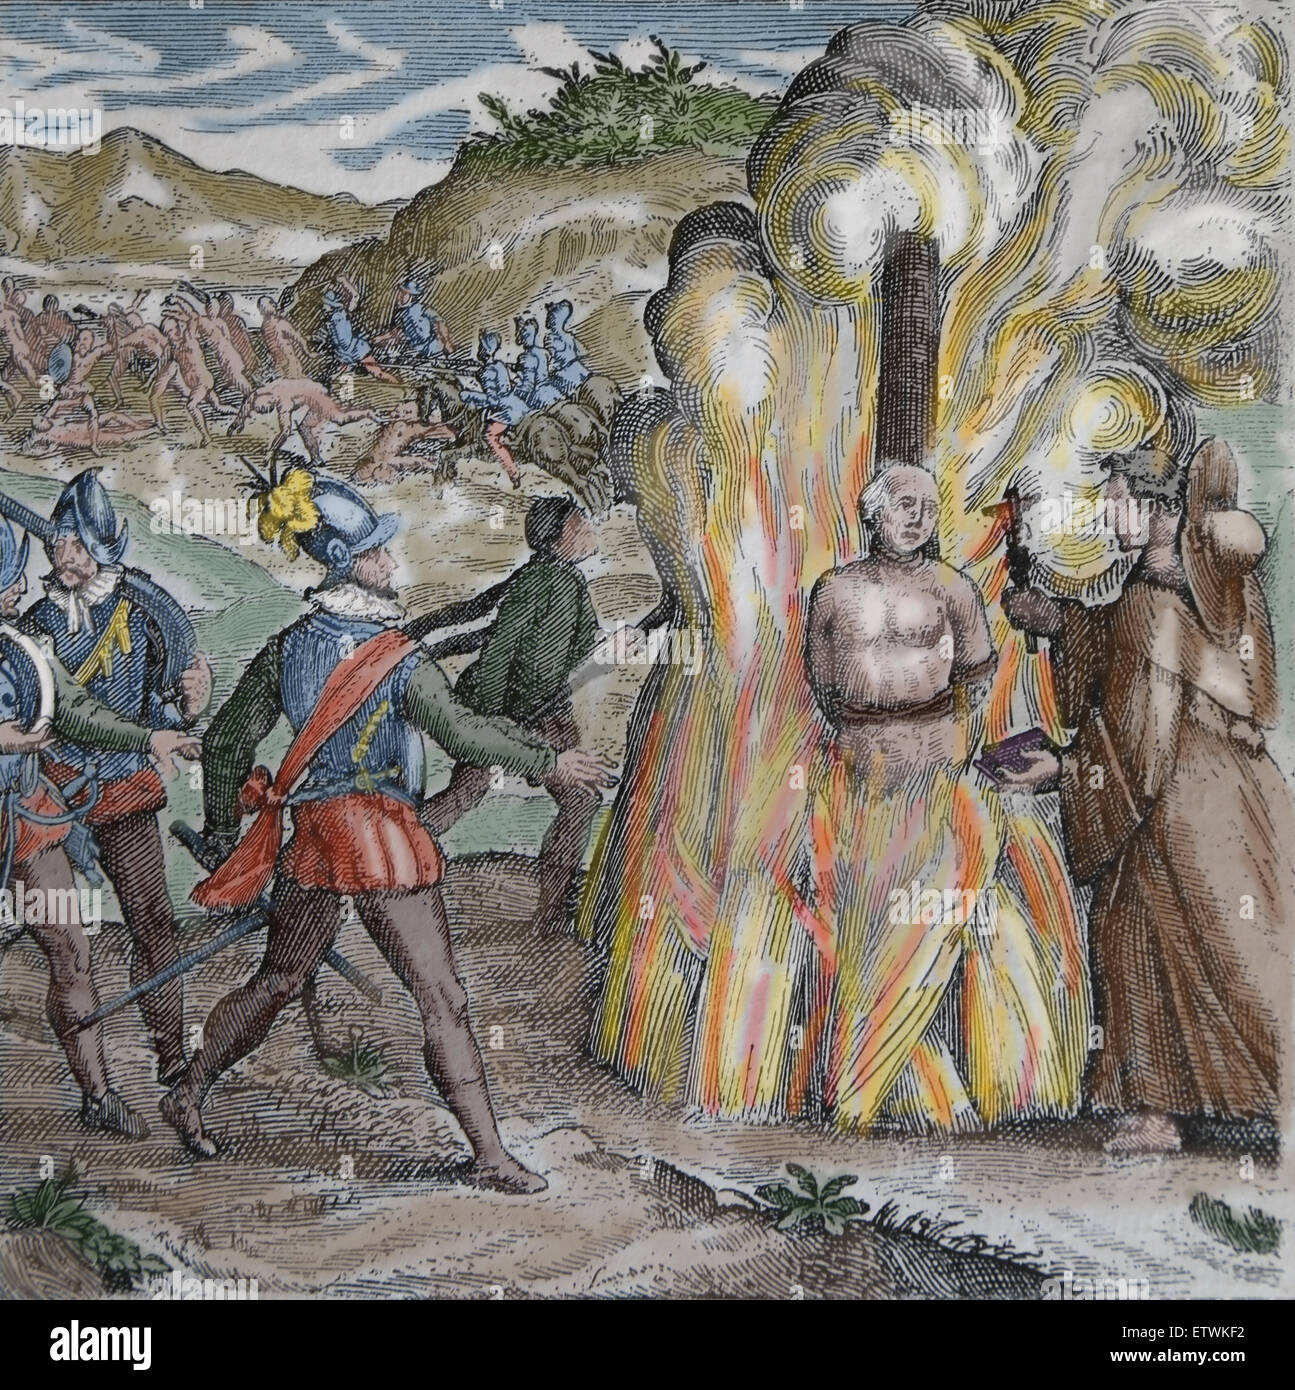 Bartolomé de Las Casas, Zerstörung von Indien. Taino Häuptling Hatuey von spanischen Soldaten verbrannt wird. Farbe. Gravur. Stockfoto